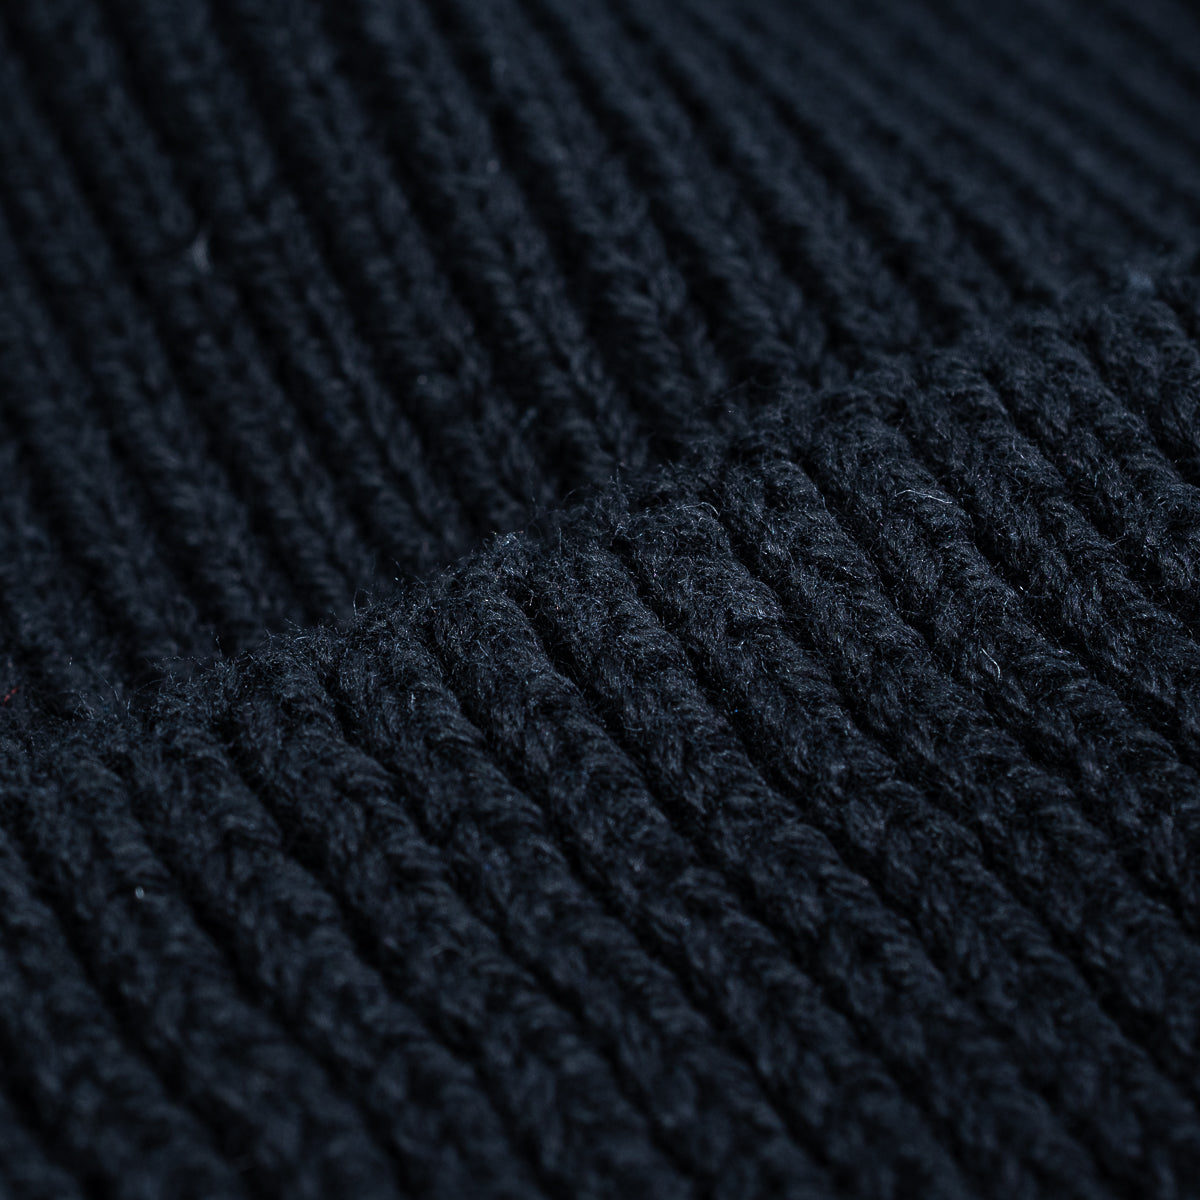 Cotton Knit Cap - Black